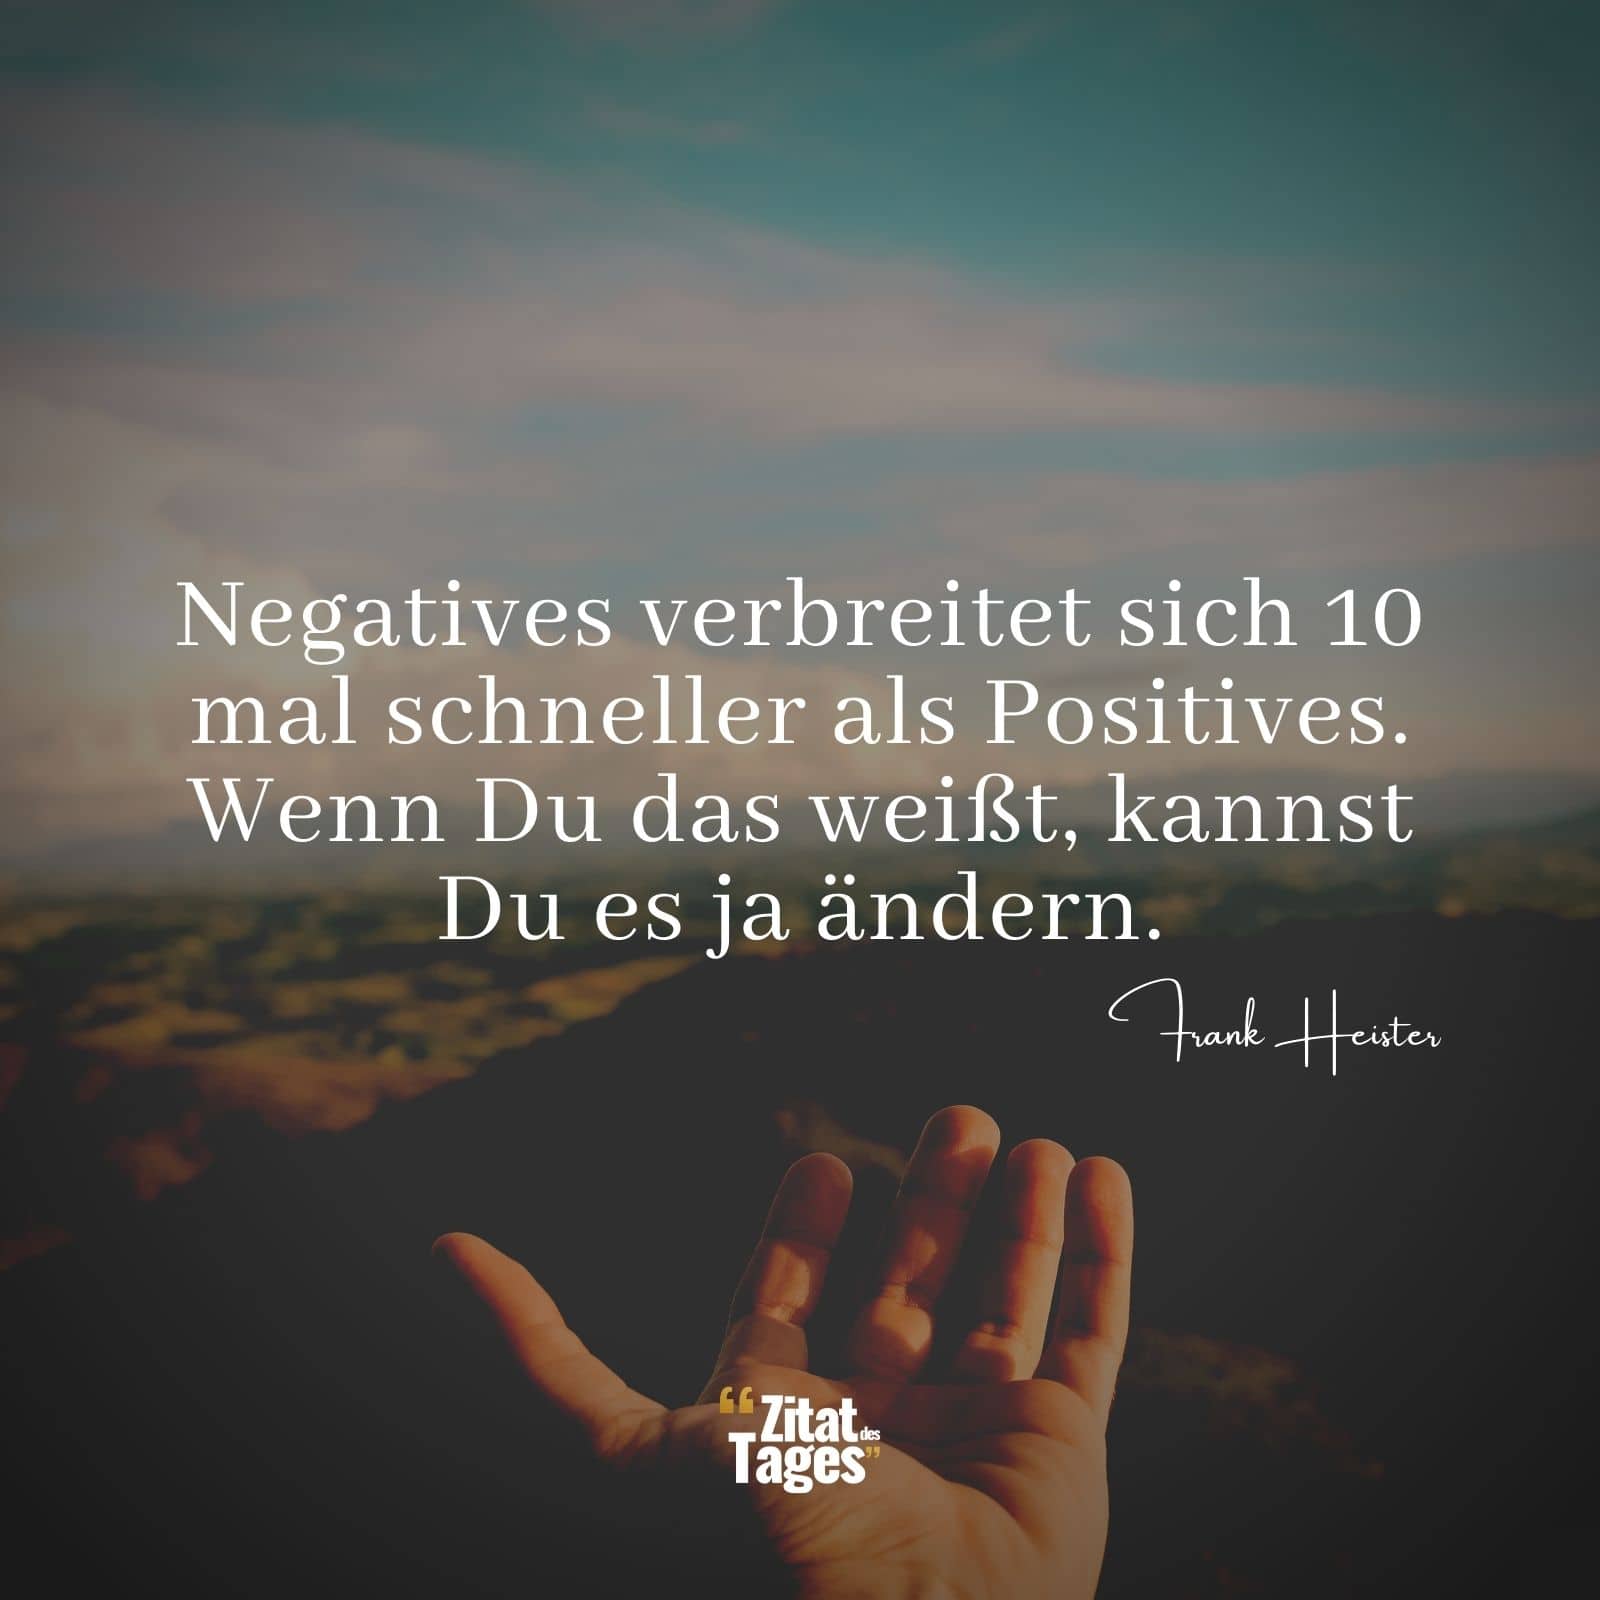 Negatives verbreitet sich 10 mal schneller als Positives. Wenn Du das weißt, kannst Du es ja ändern. - Frank Heister